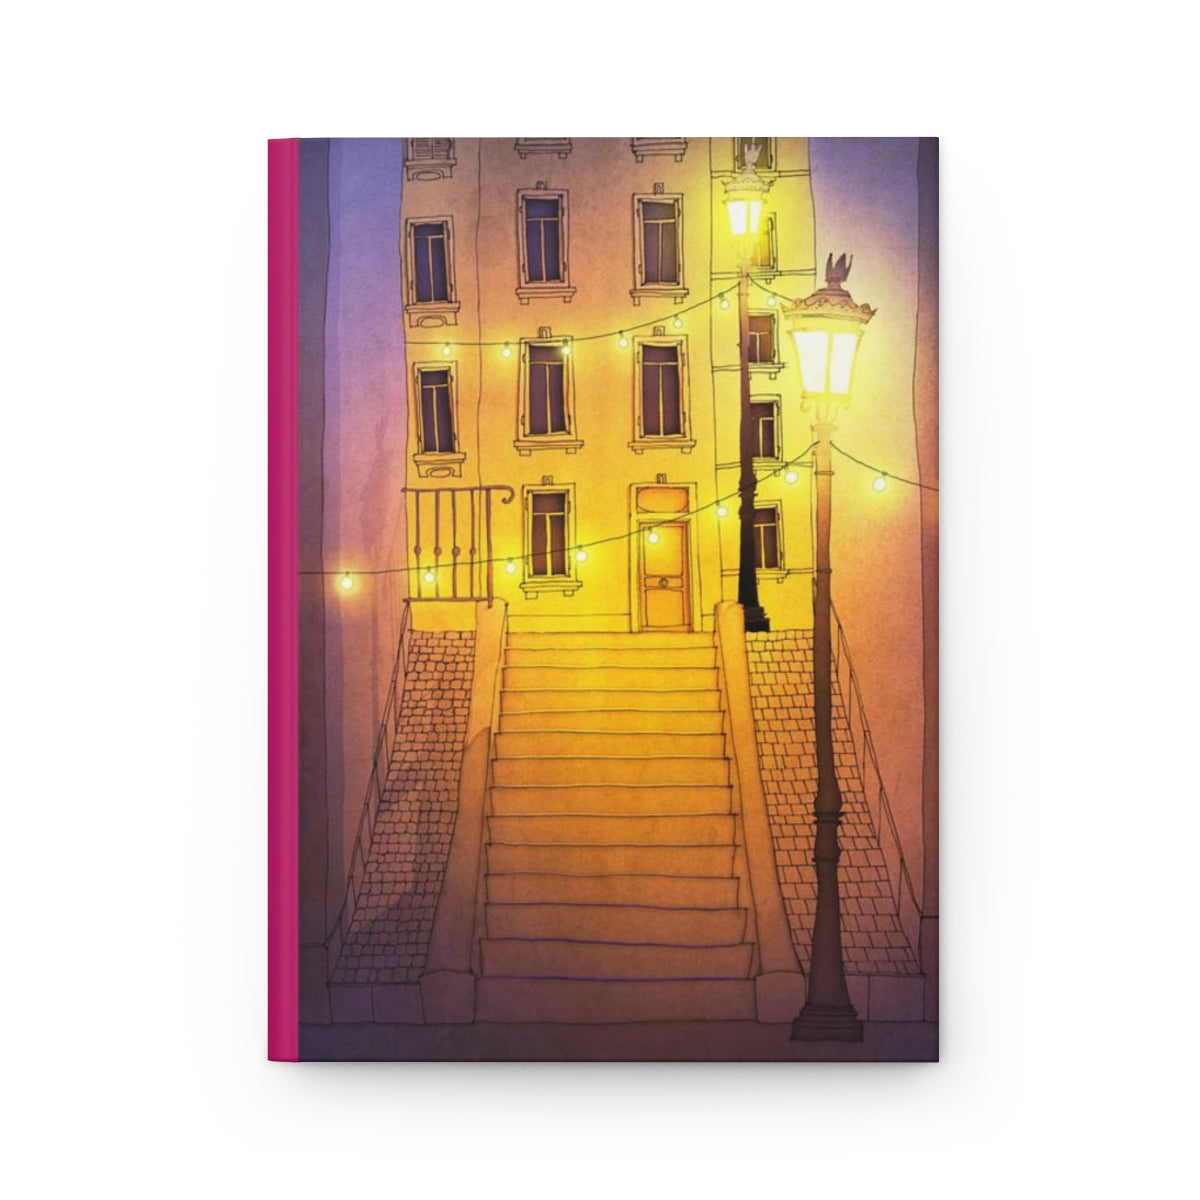 Night walking (purple) - Paris Art Journal No.17